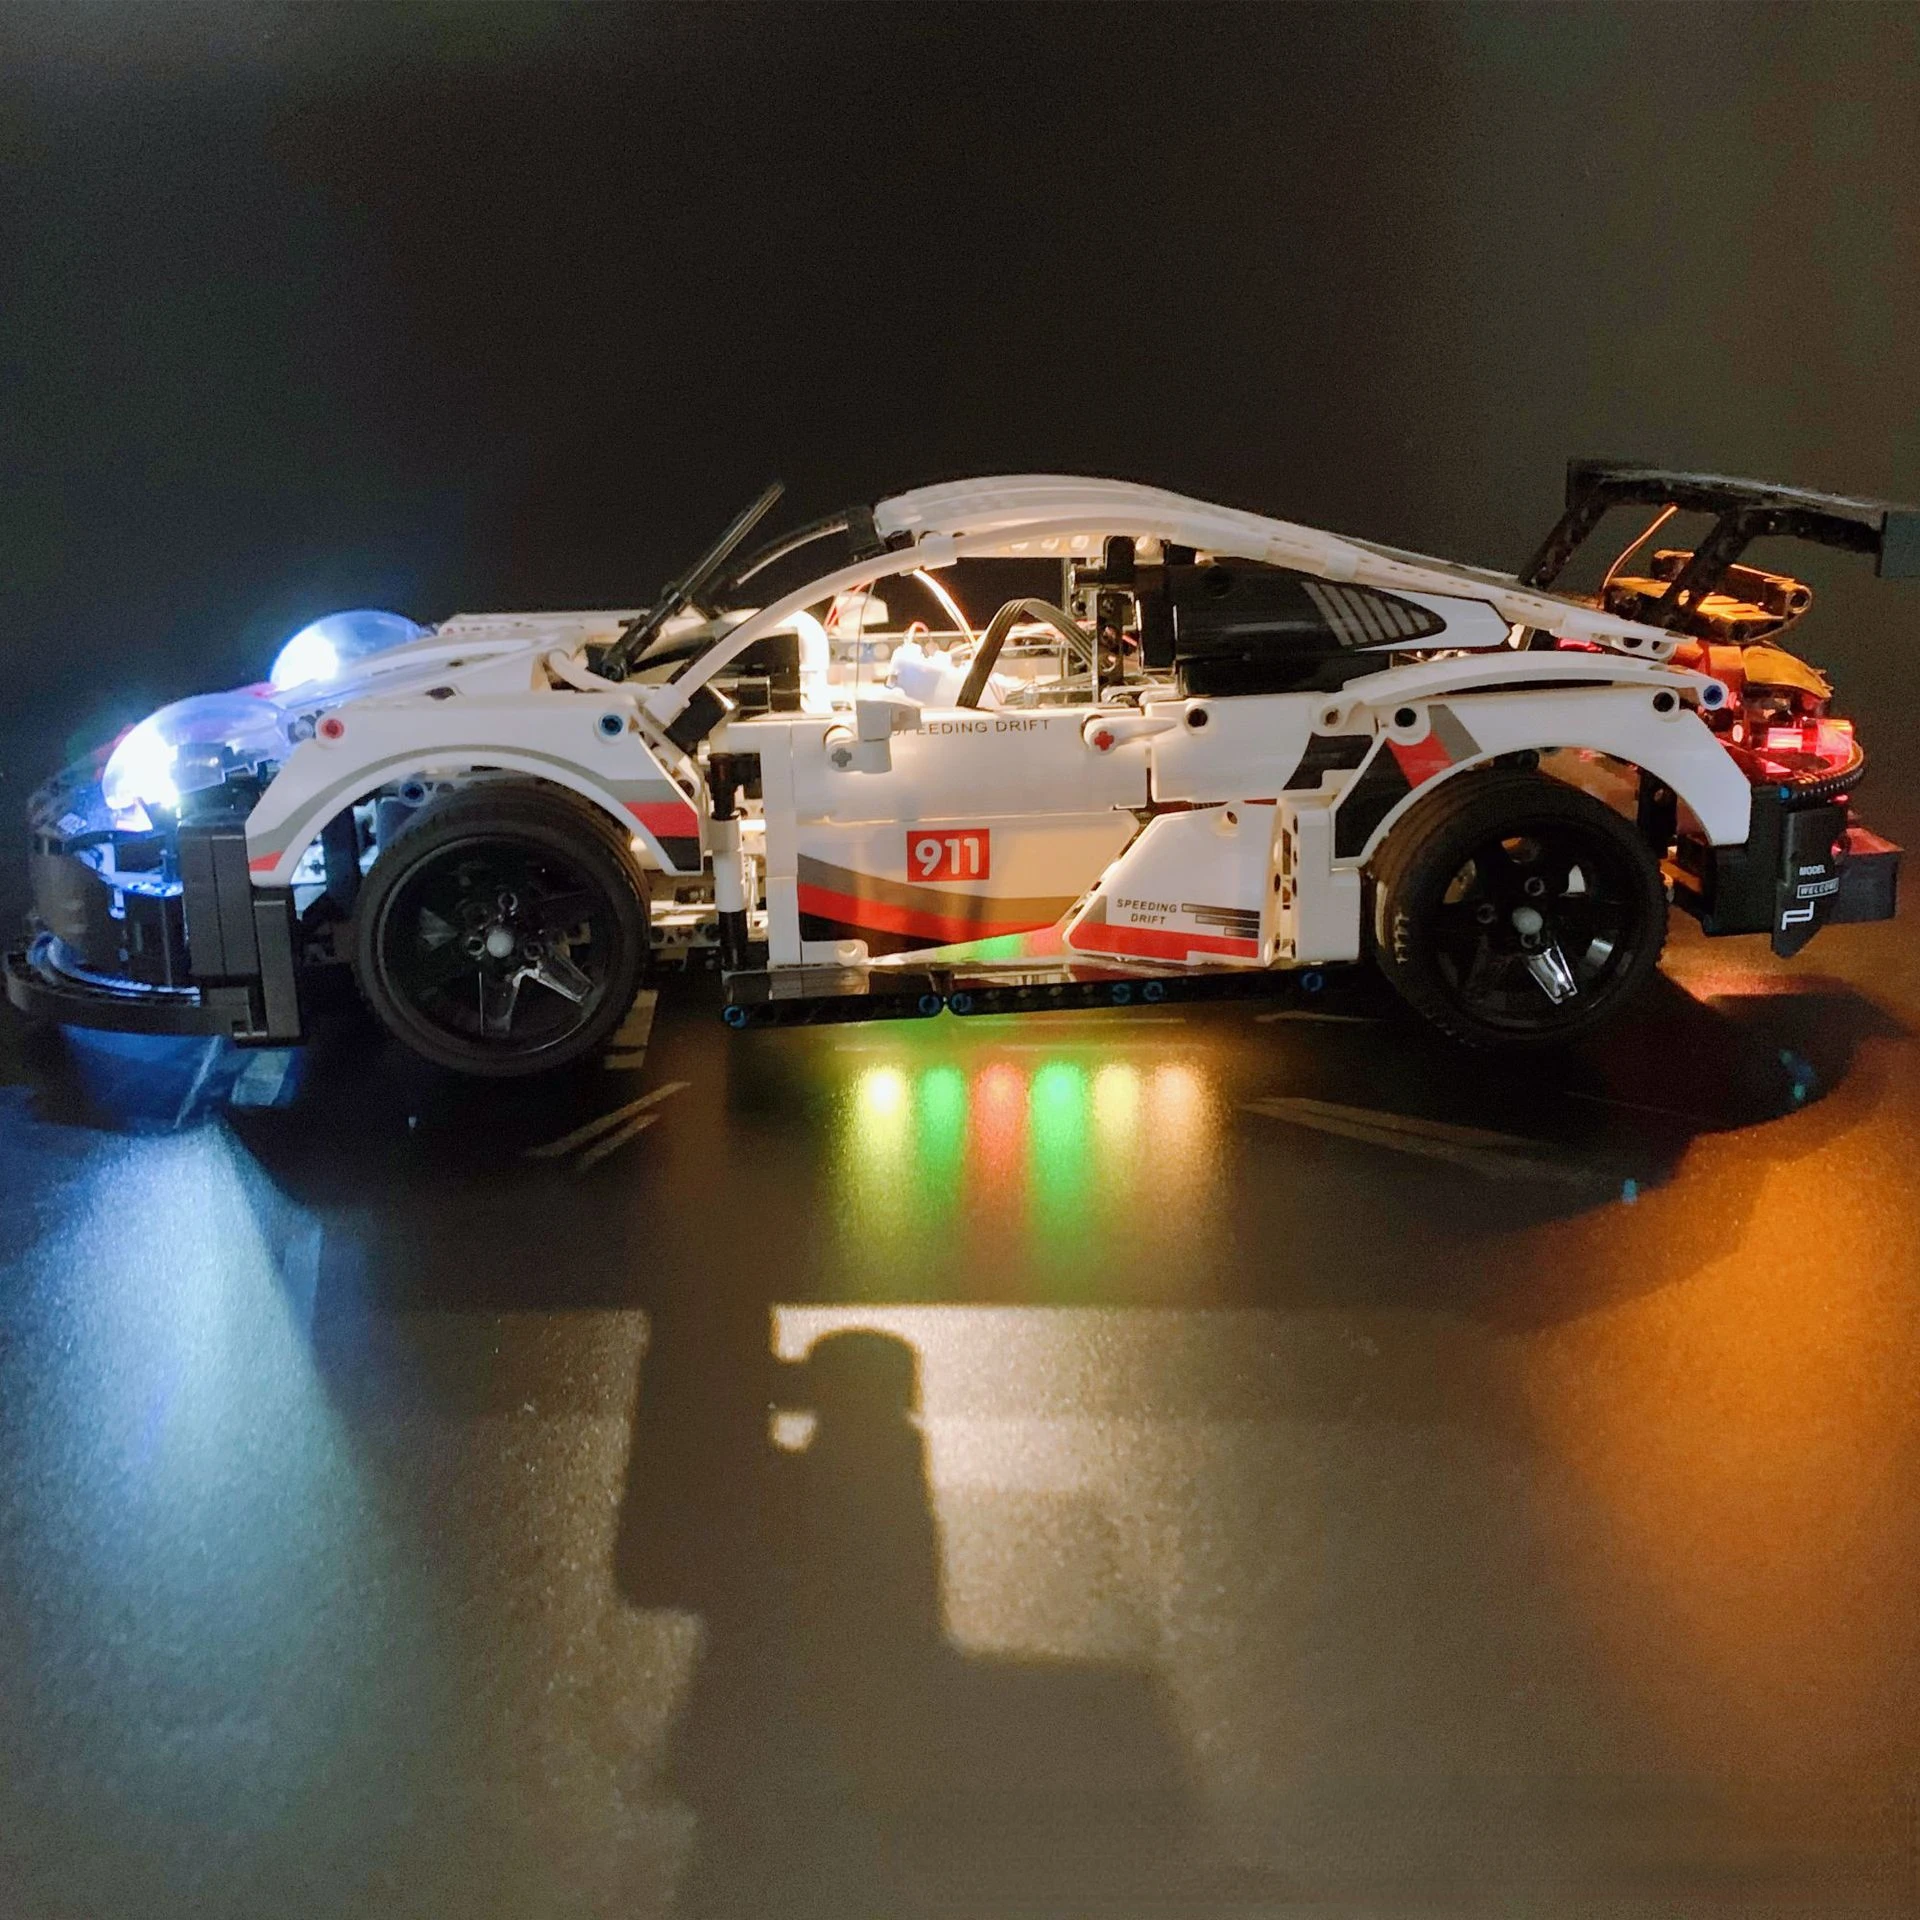 

Светодиодный фонарь для 42096 911 RSR, совместим с 20097 белым супер гоночным автомобилем, «сделай сам», лампа, игрушки, подарочный набор, конструкторы в комплект не входят